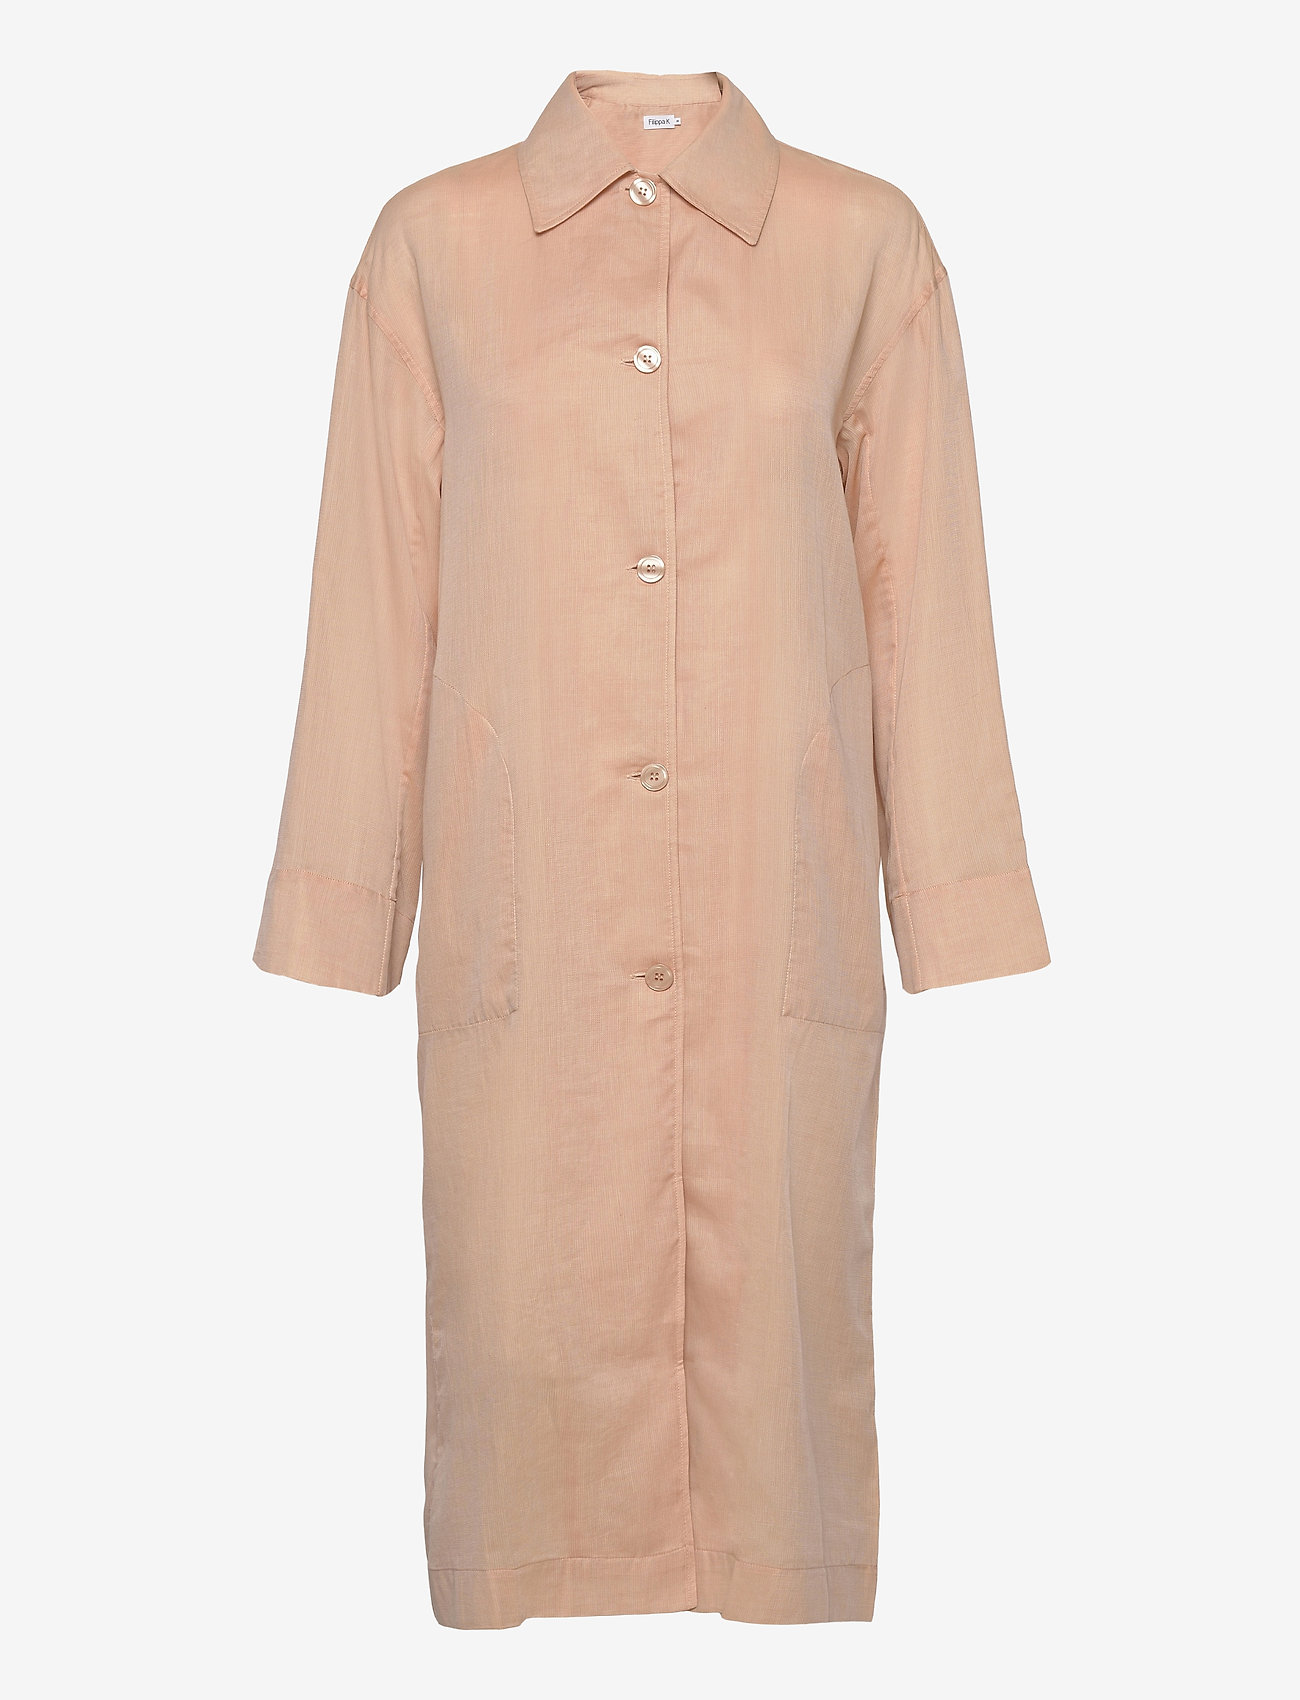 Filippa K - Georgia Coat Dress - skjortekjoler - maplewood - 0